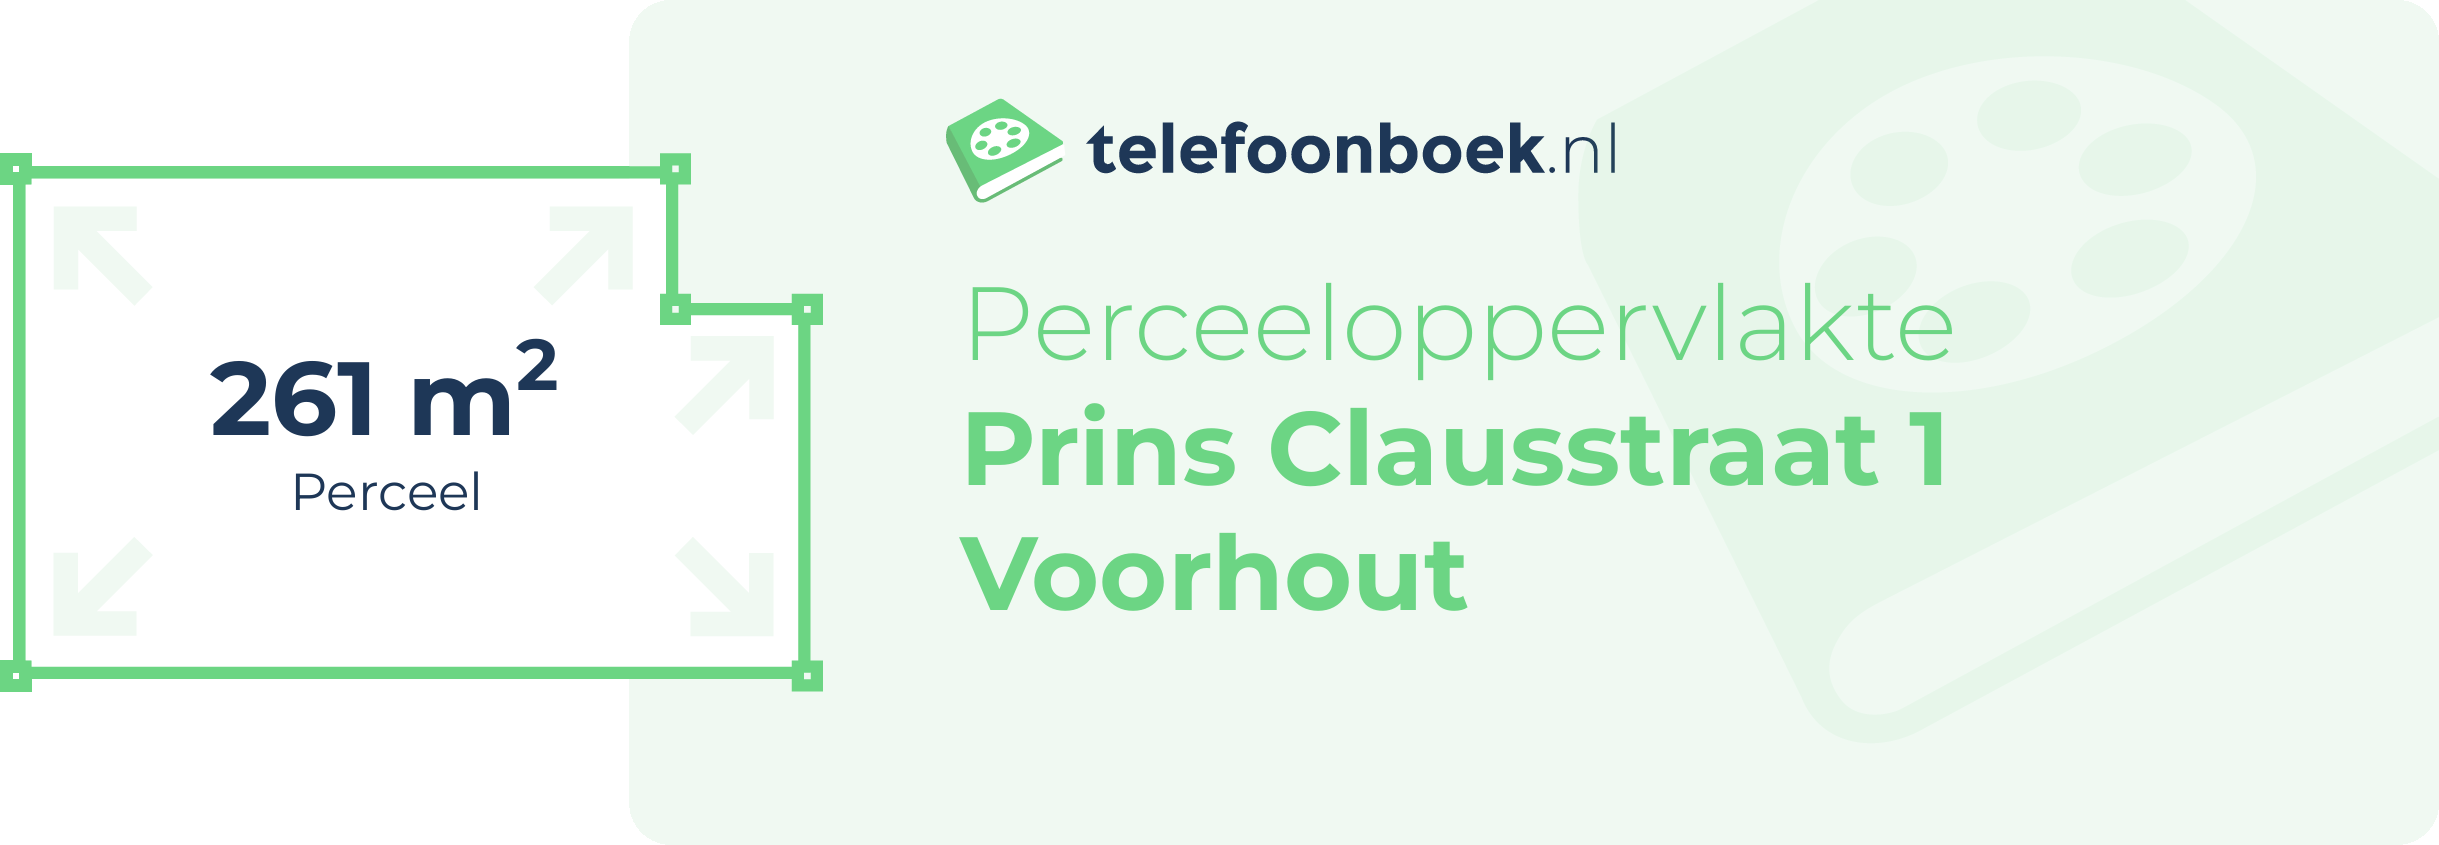 Perceeloppervlakte Prins Clausstraat 1 Voorhout